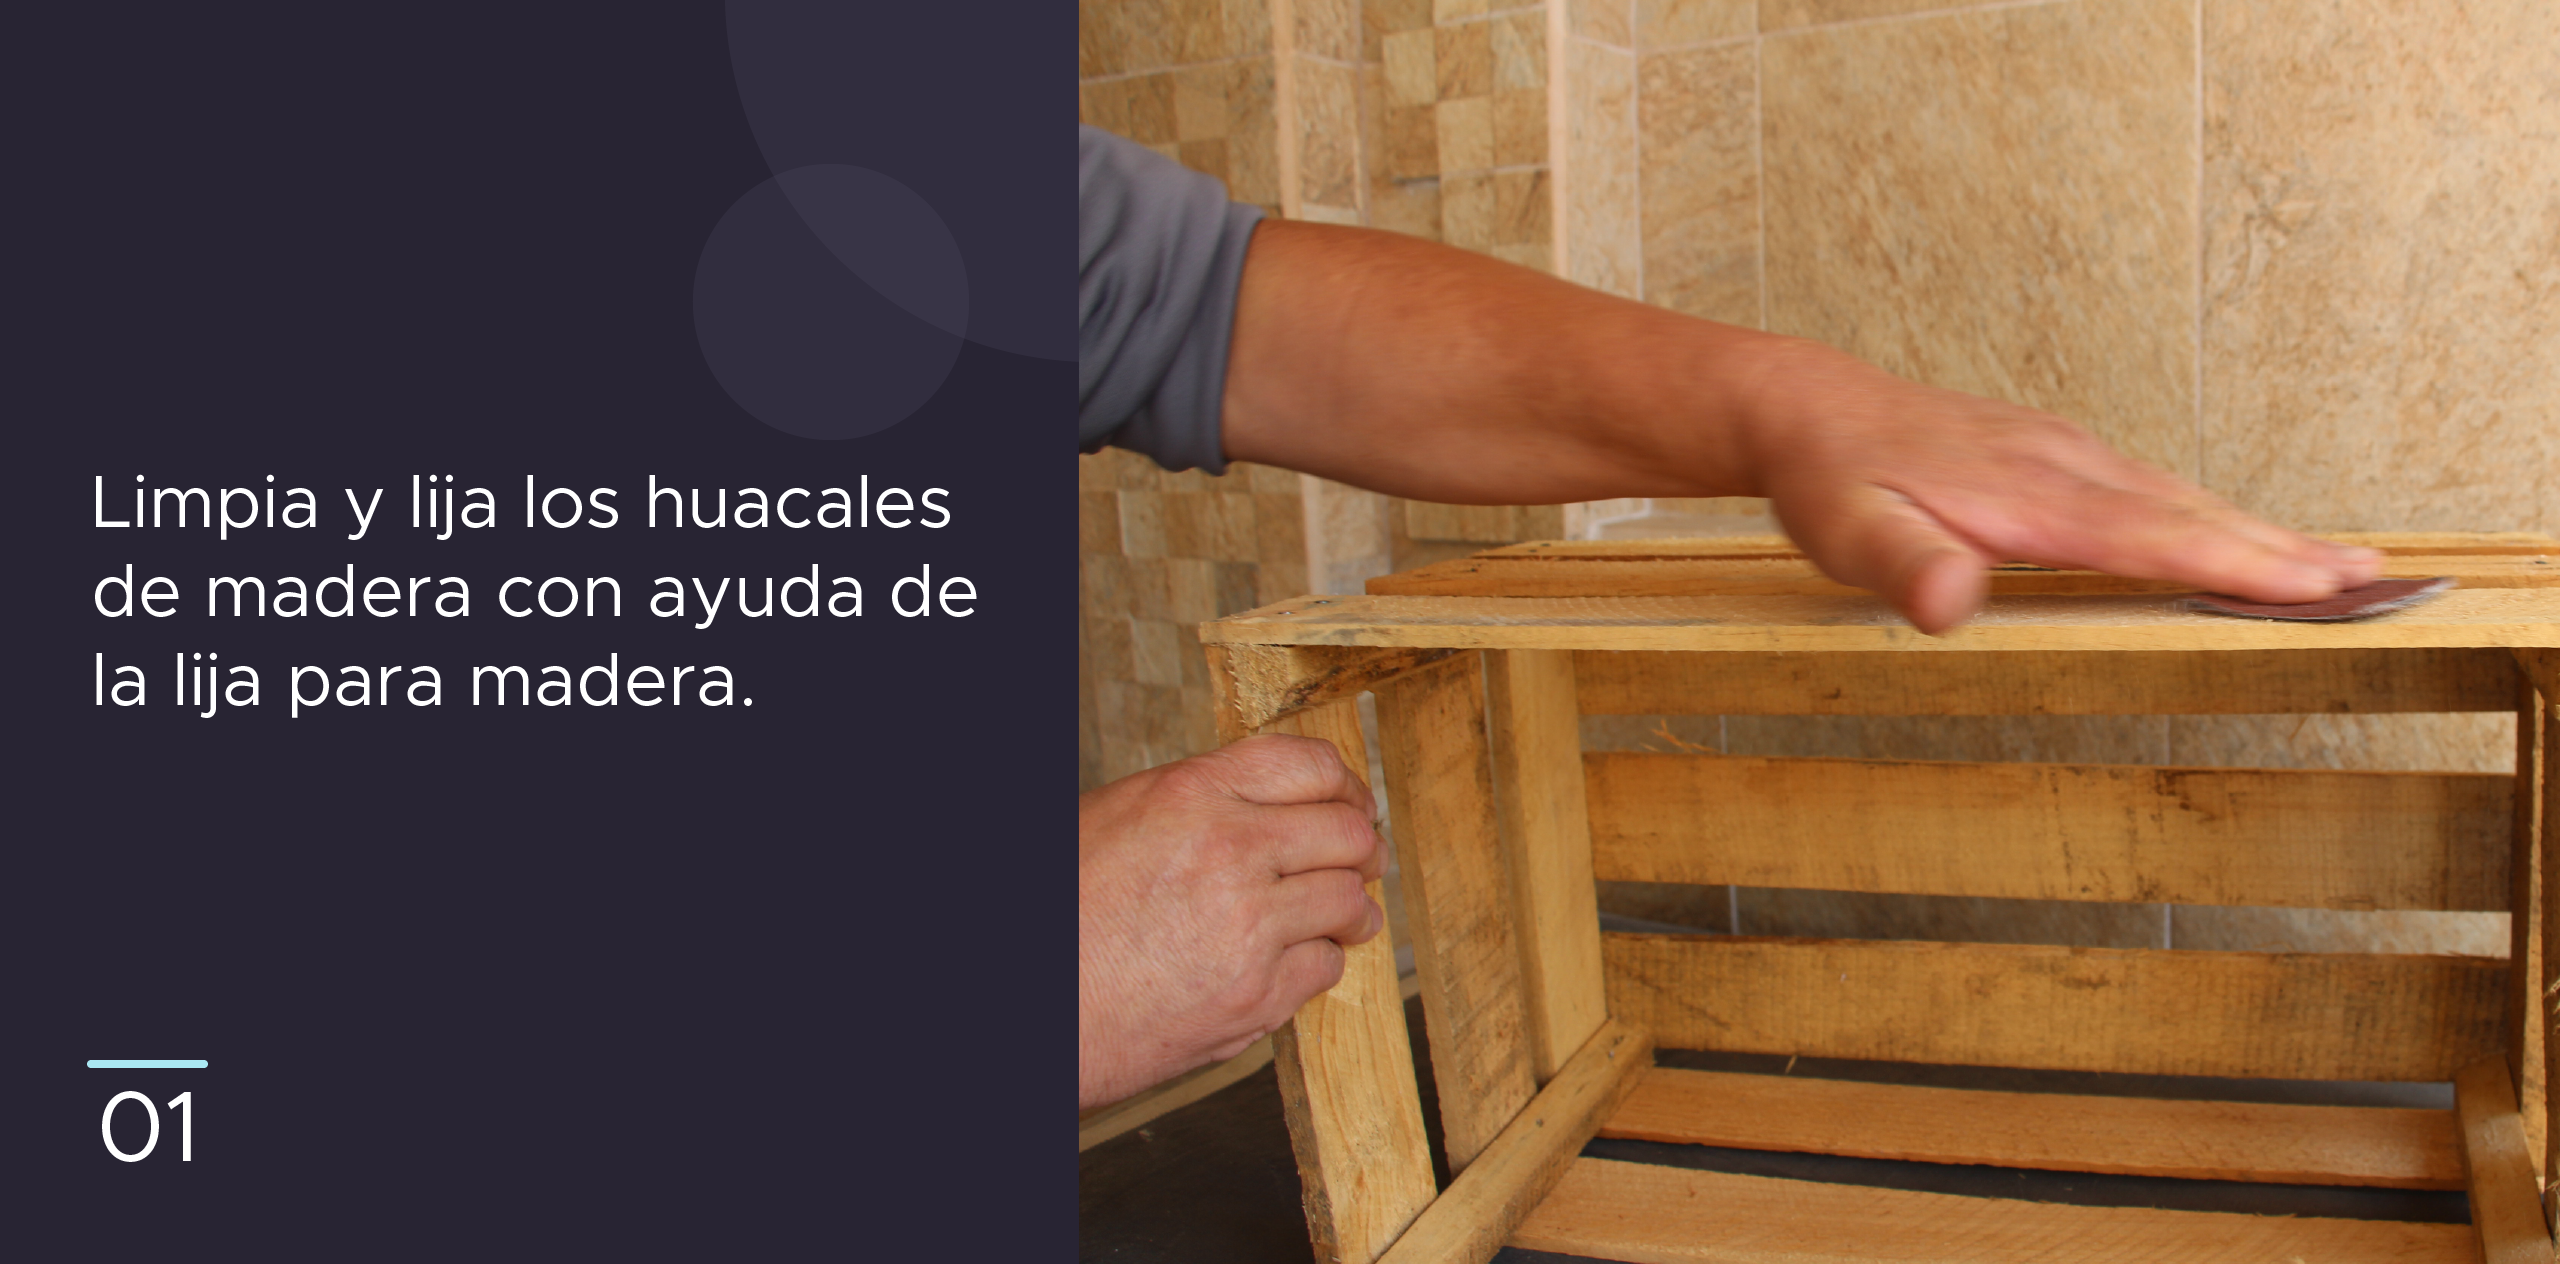 1. Limpia y fija los huacales de madera con ayuda de la lija para madera